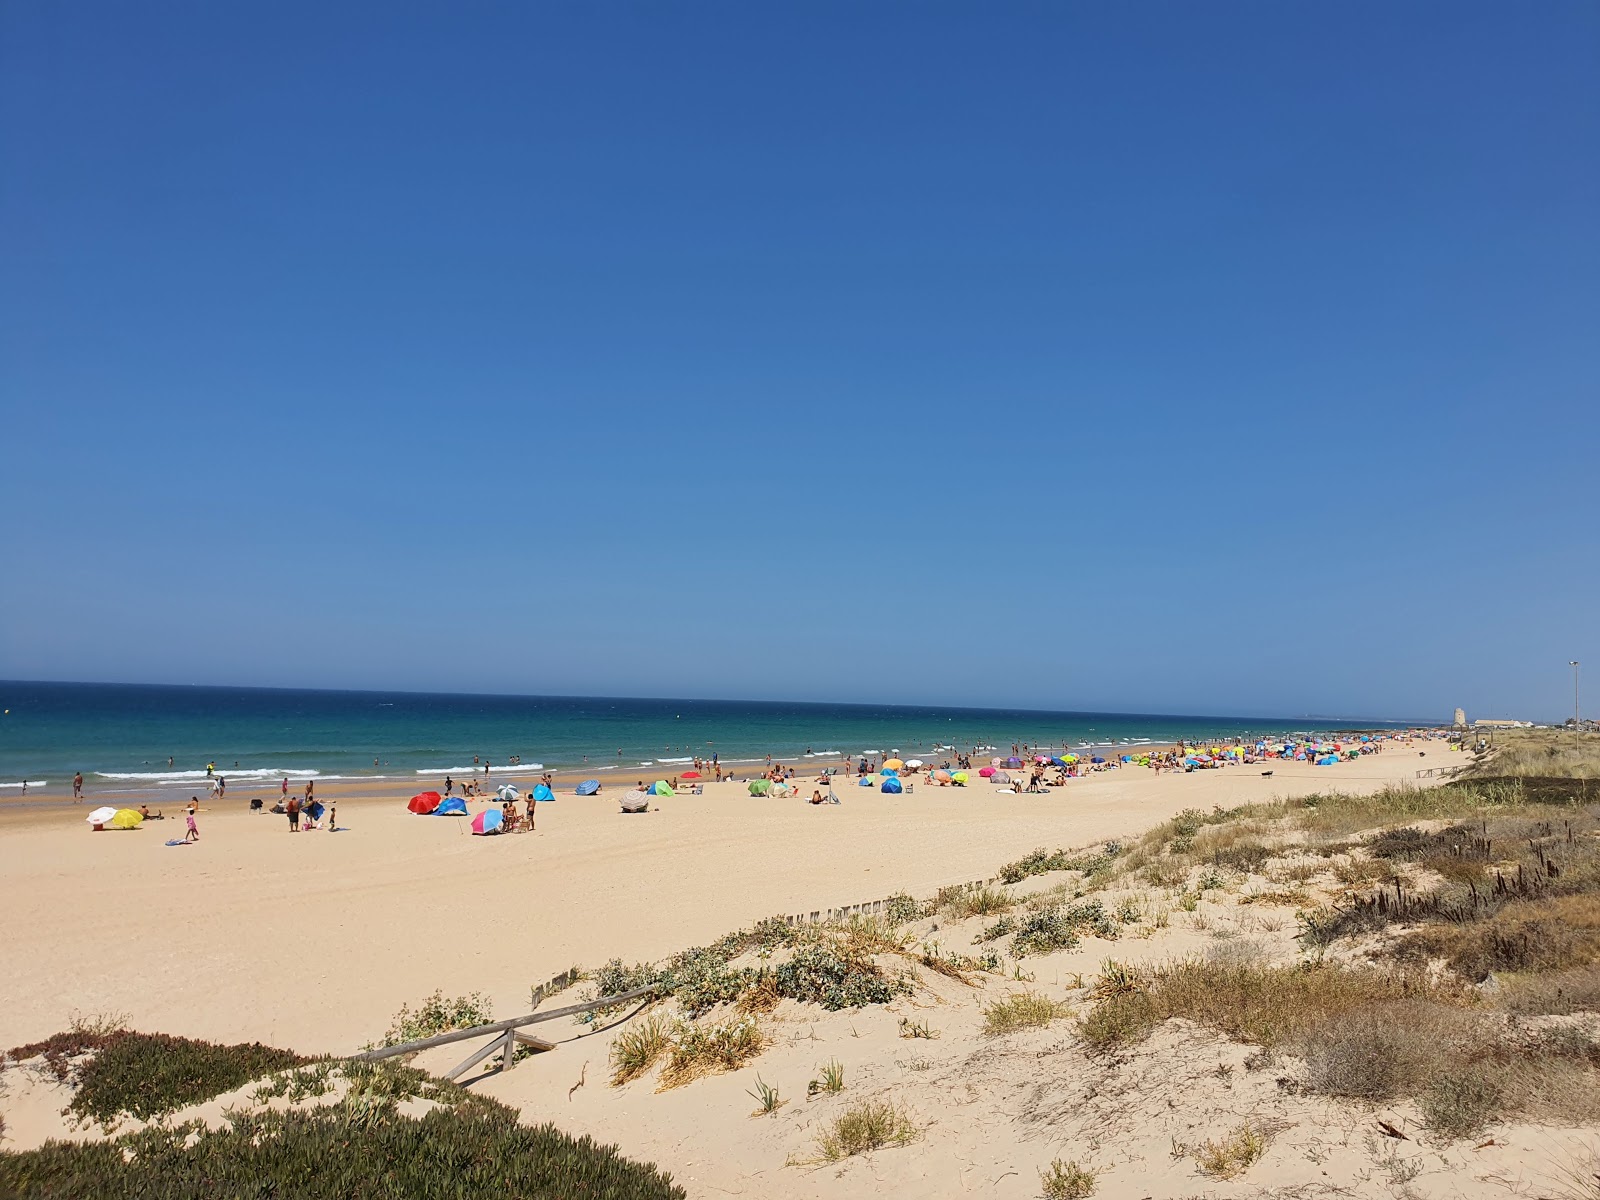 Foto af El Palmar Beach - populært sted blandt afslapningskendere